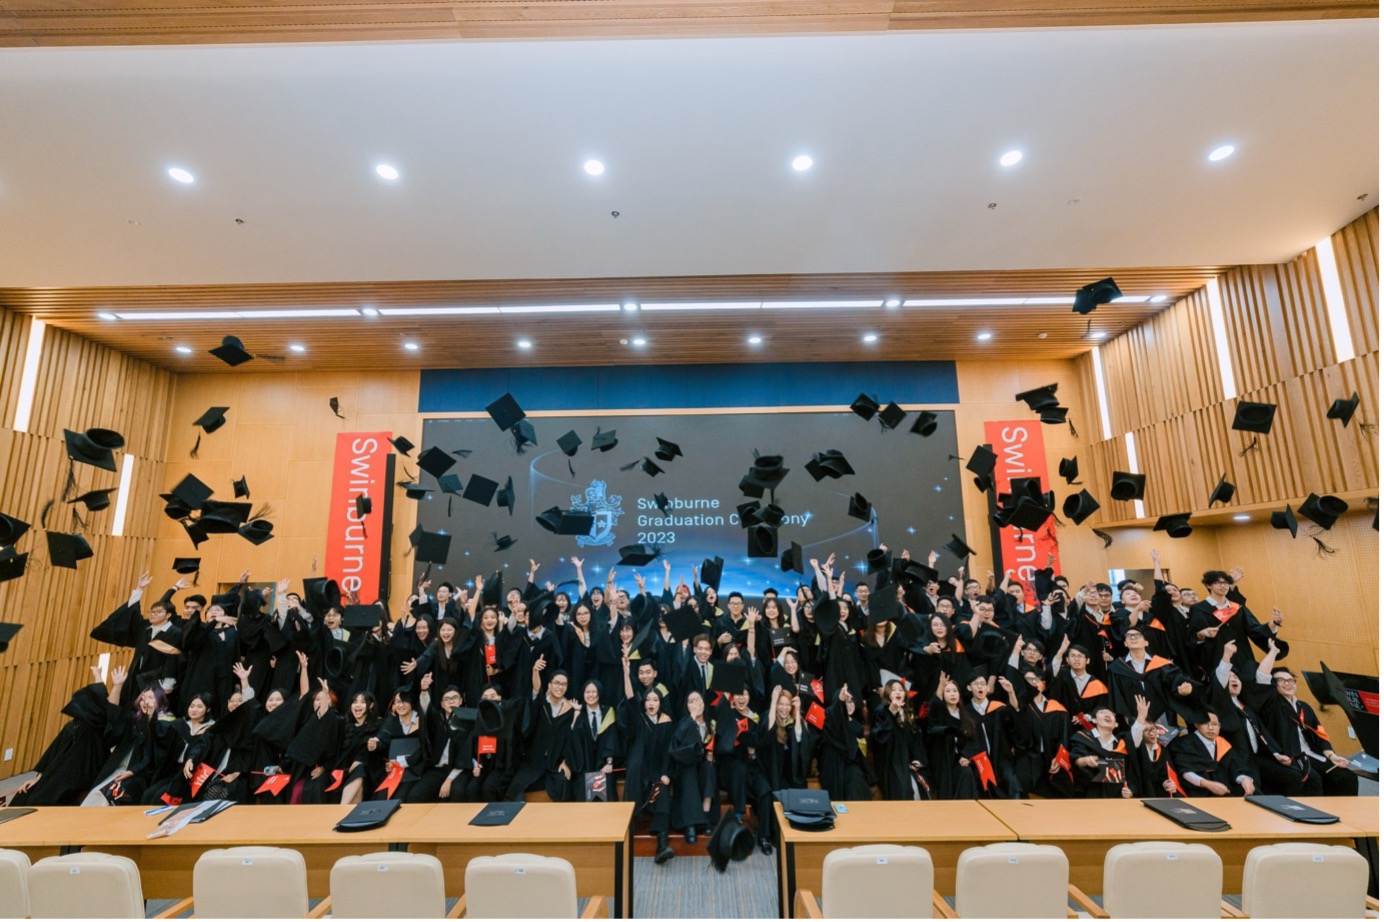 Lễ tốt nghiệp của sinh viên Khoá 2 đánh dấu bước thành công tiếp theo trong mối quan hệ hợp tác giữa Đại học FPT và Swinburne University of Technology